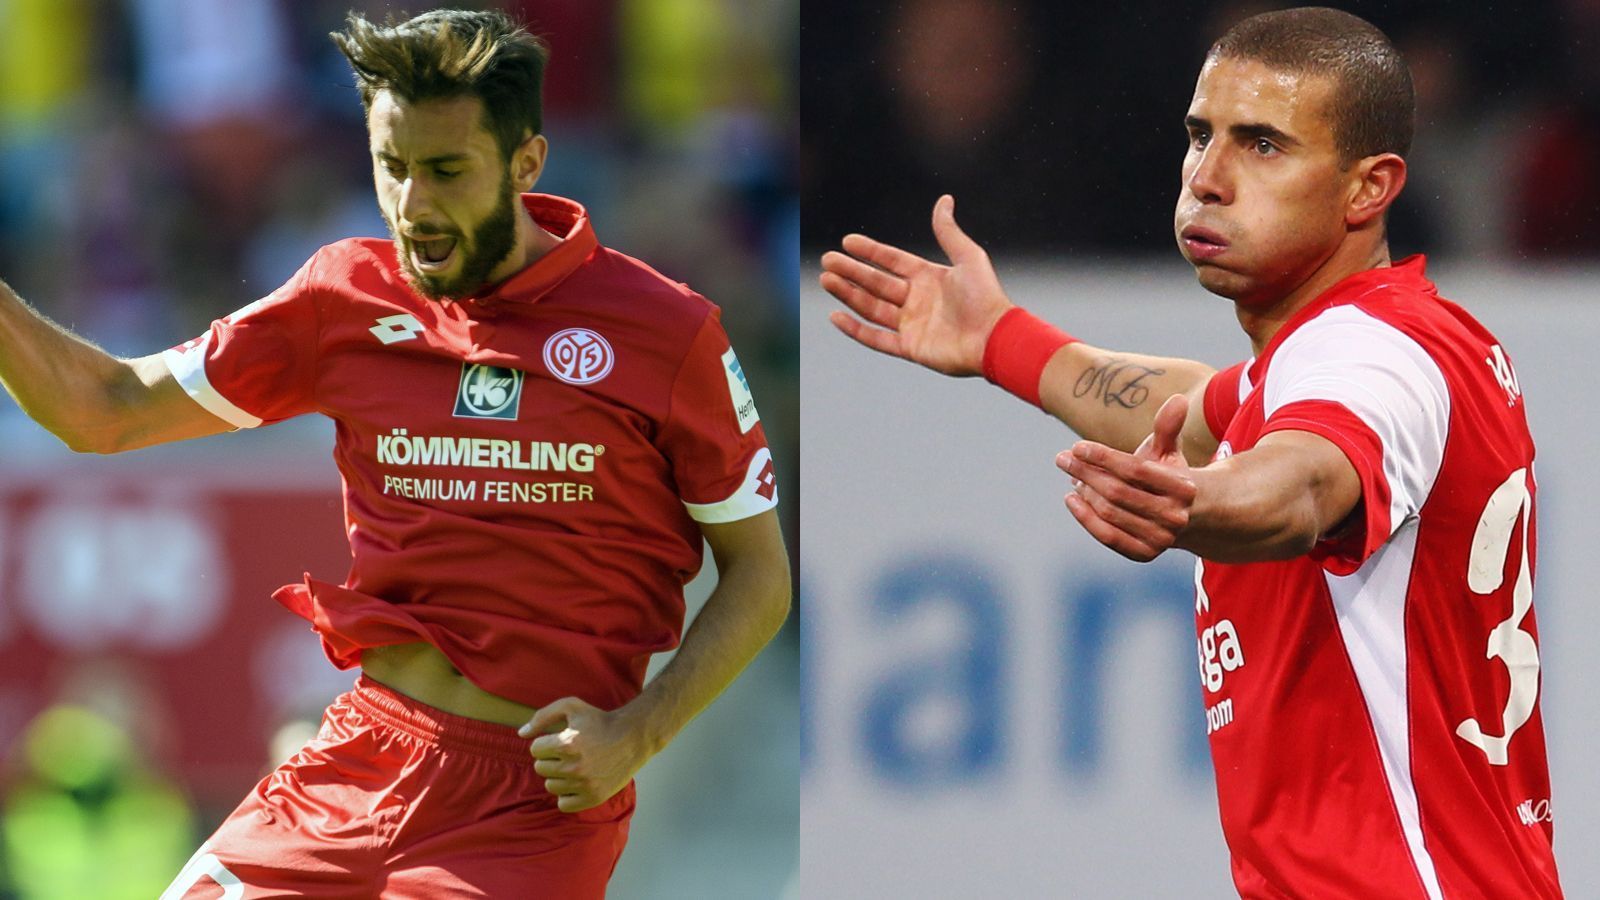 
                <strong>1. FSV Mainz 05</strong><br>
                Bundesliga-Rekordtorschütze: Yunus Malli (li.) und Mohamed Zidan (re.) - Bundesliga-Tore: 29 - Vereins-Rekordtorschütze: Michael Thurk - Pflichtspiel-Tore: 64
              